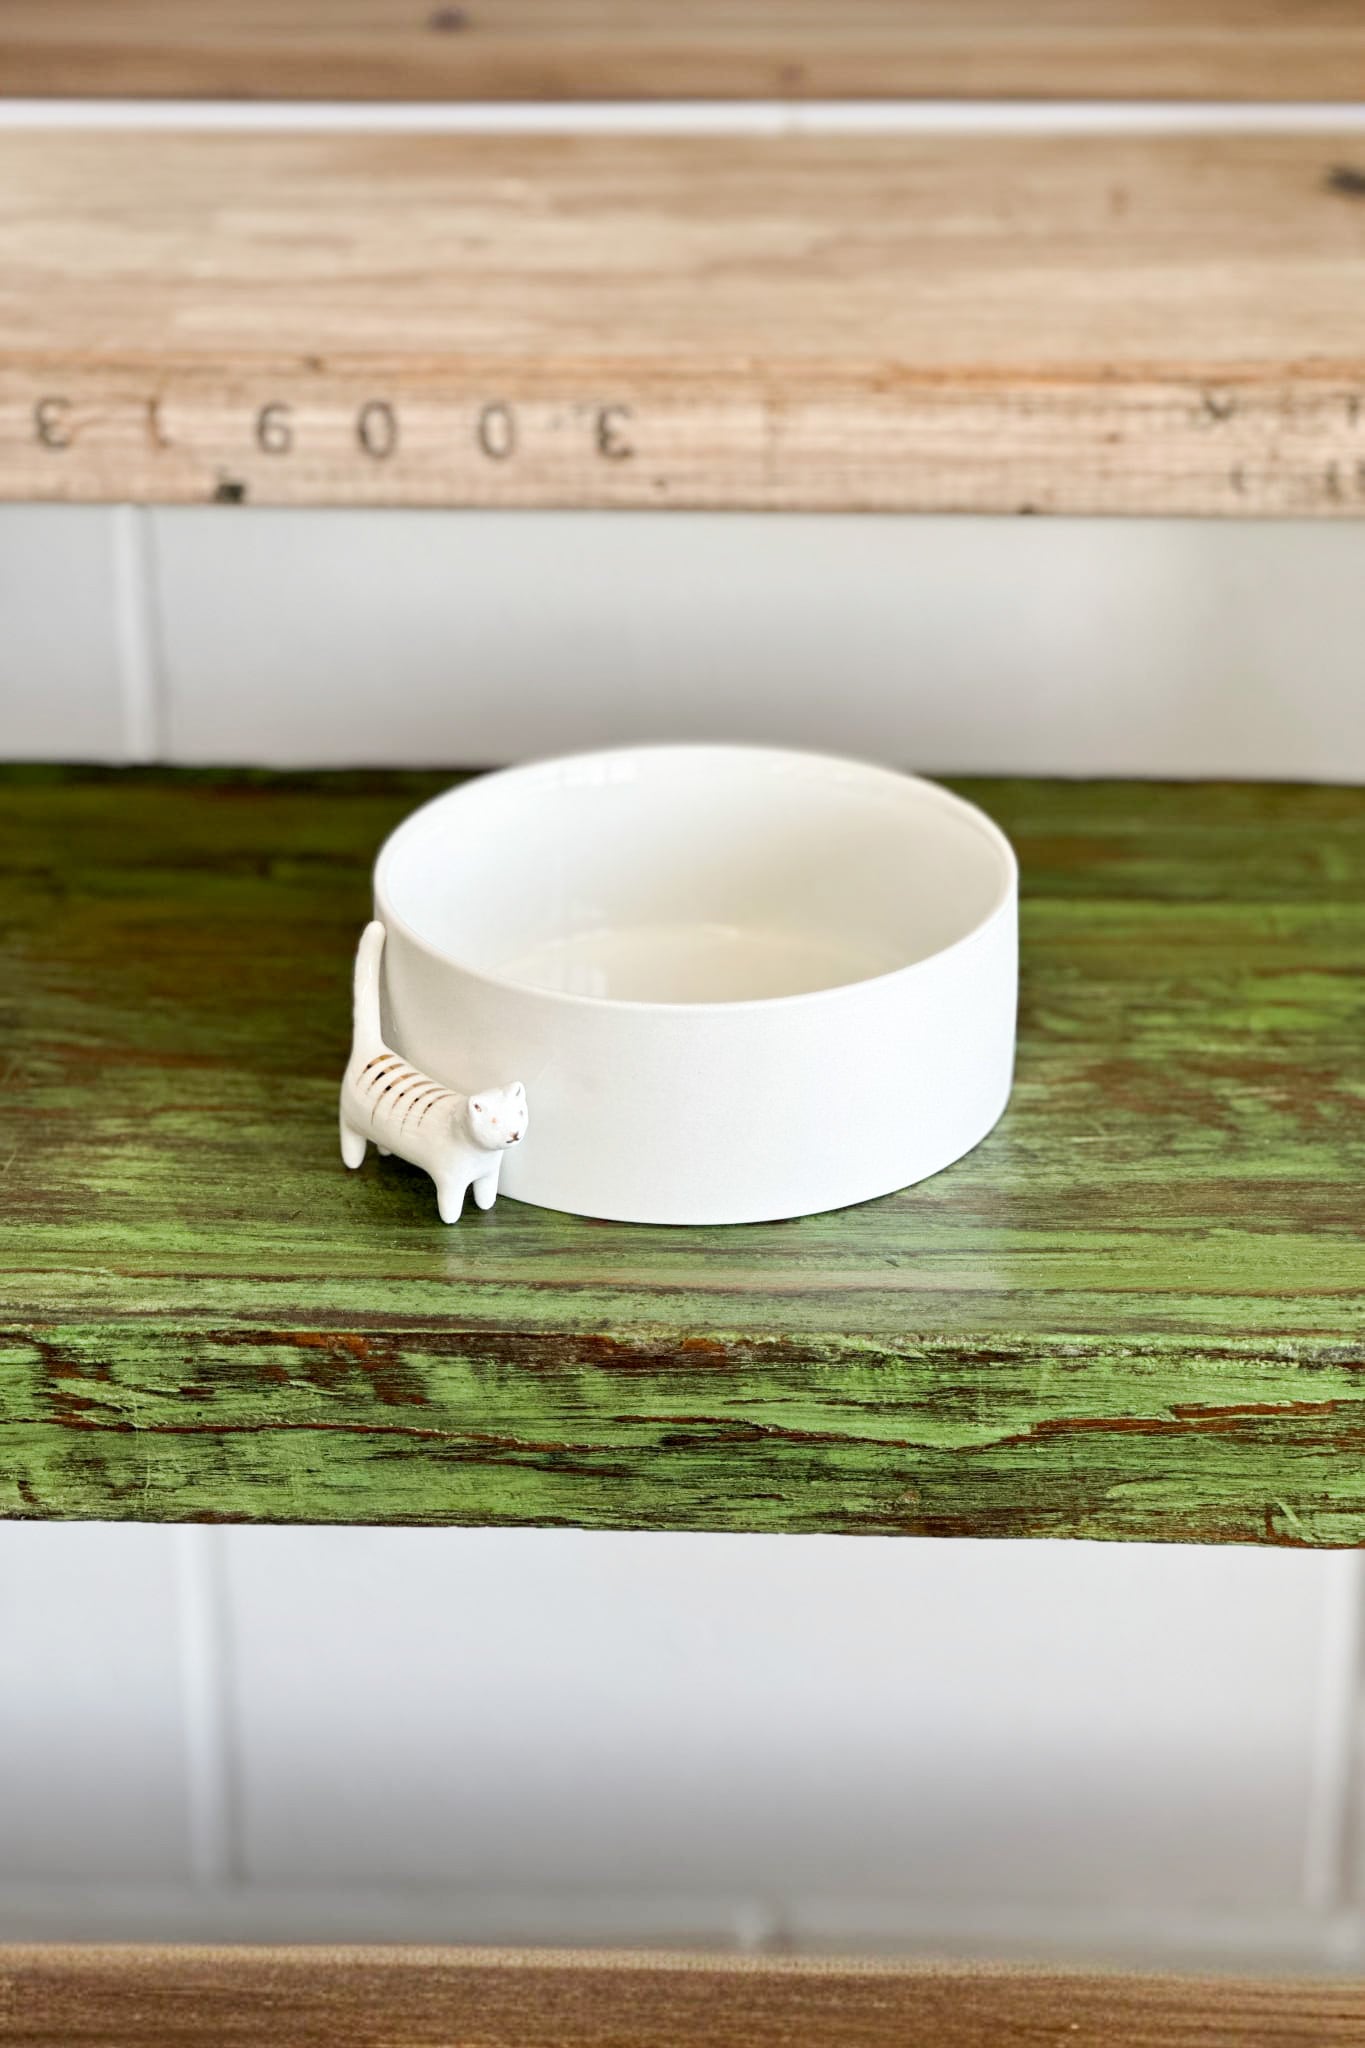 RADAR Cat - Porcelain Bowl - Magpie Style